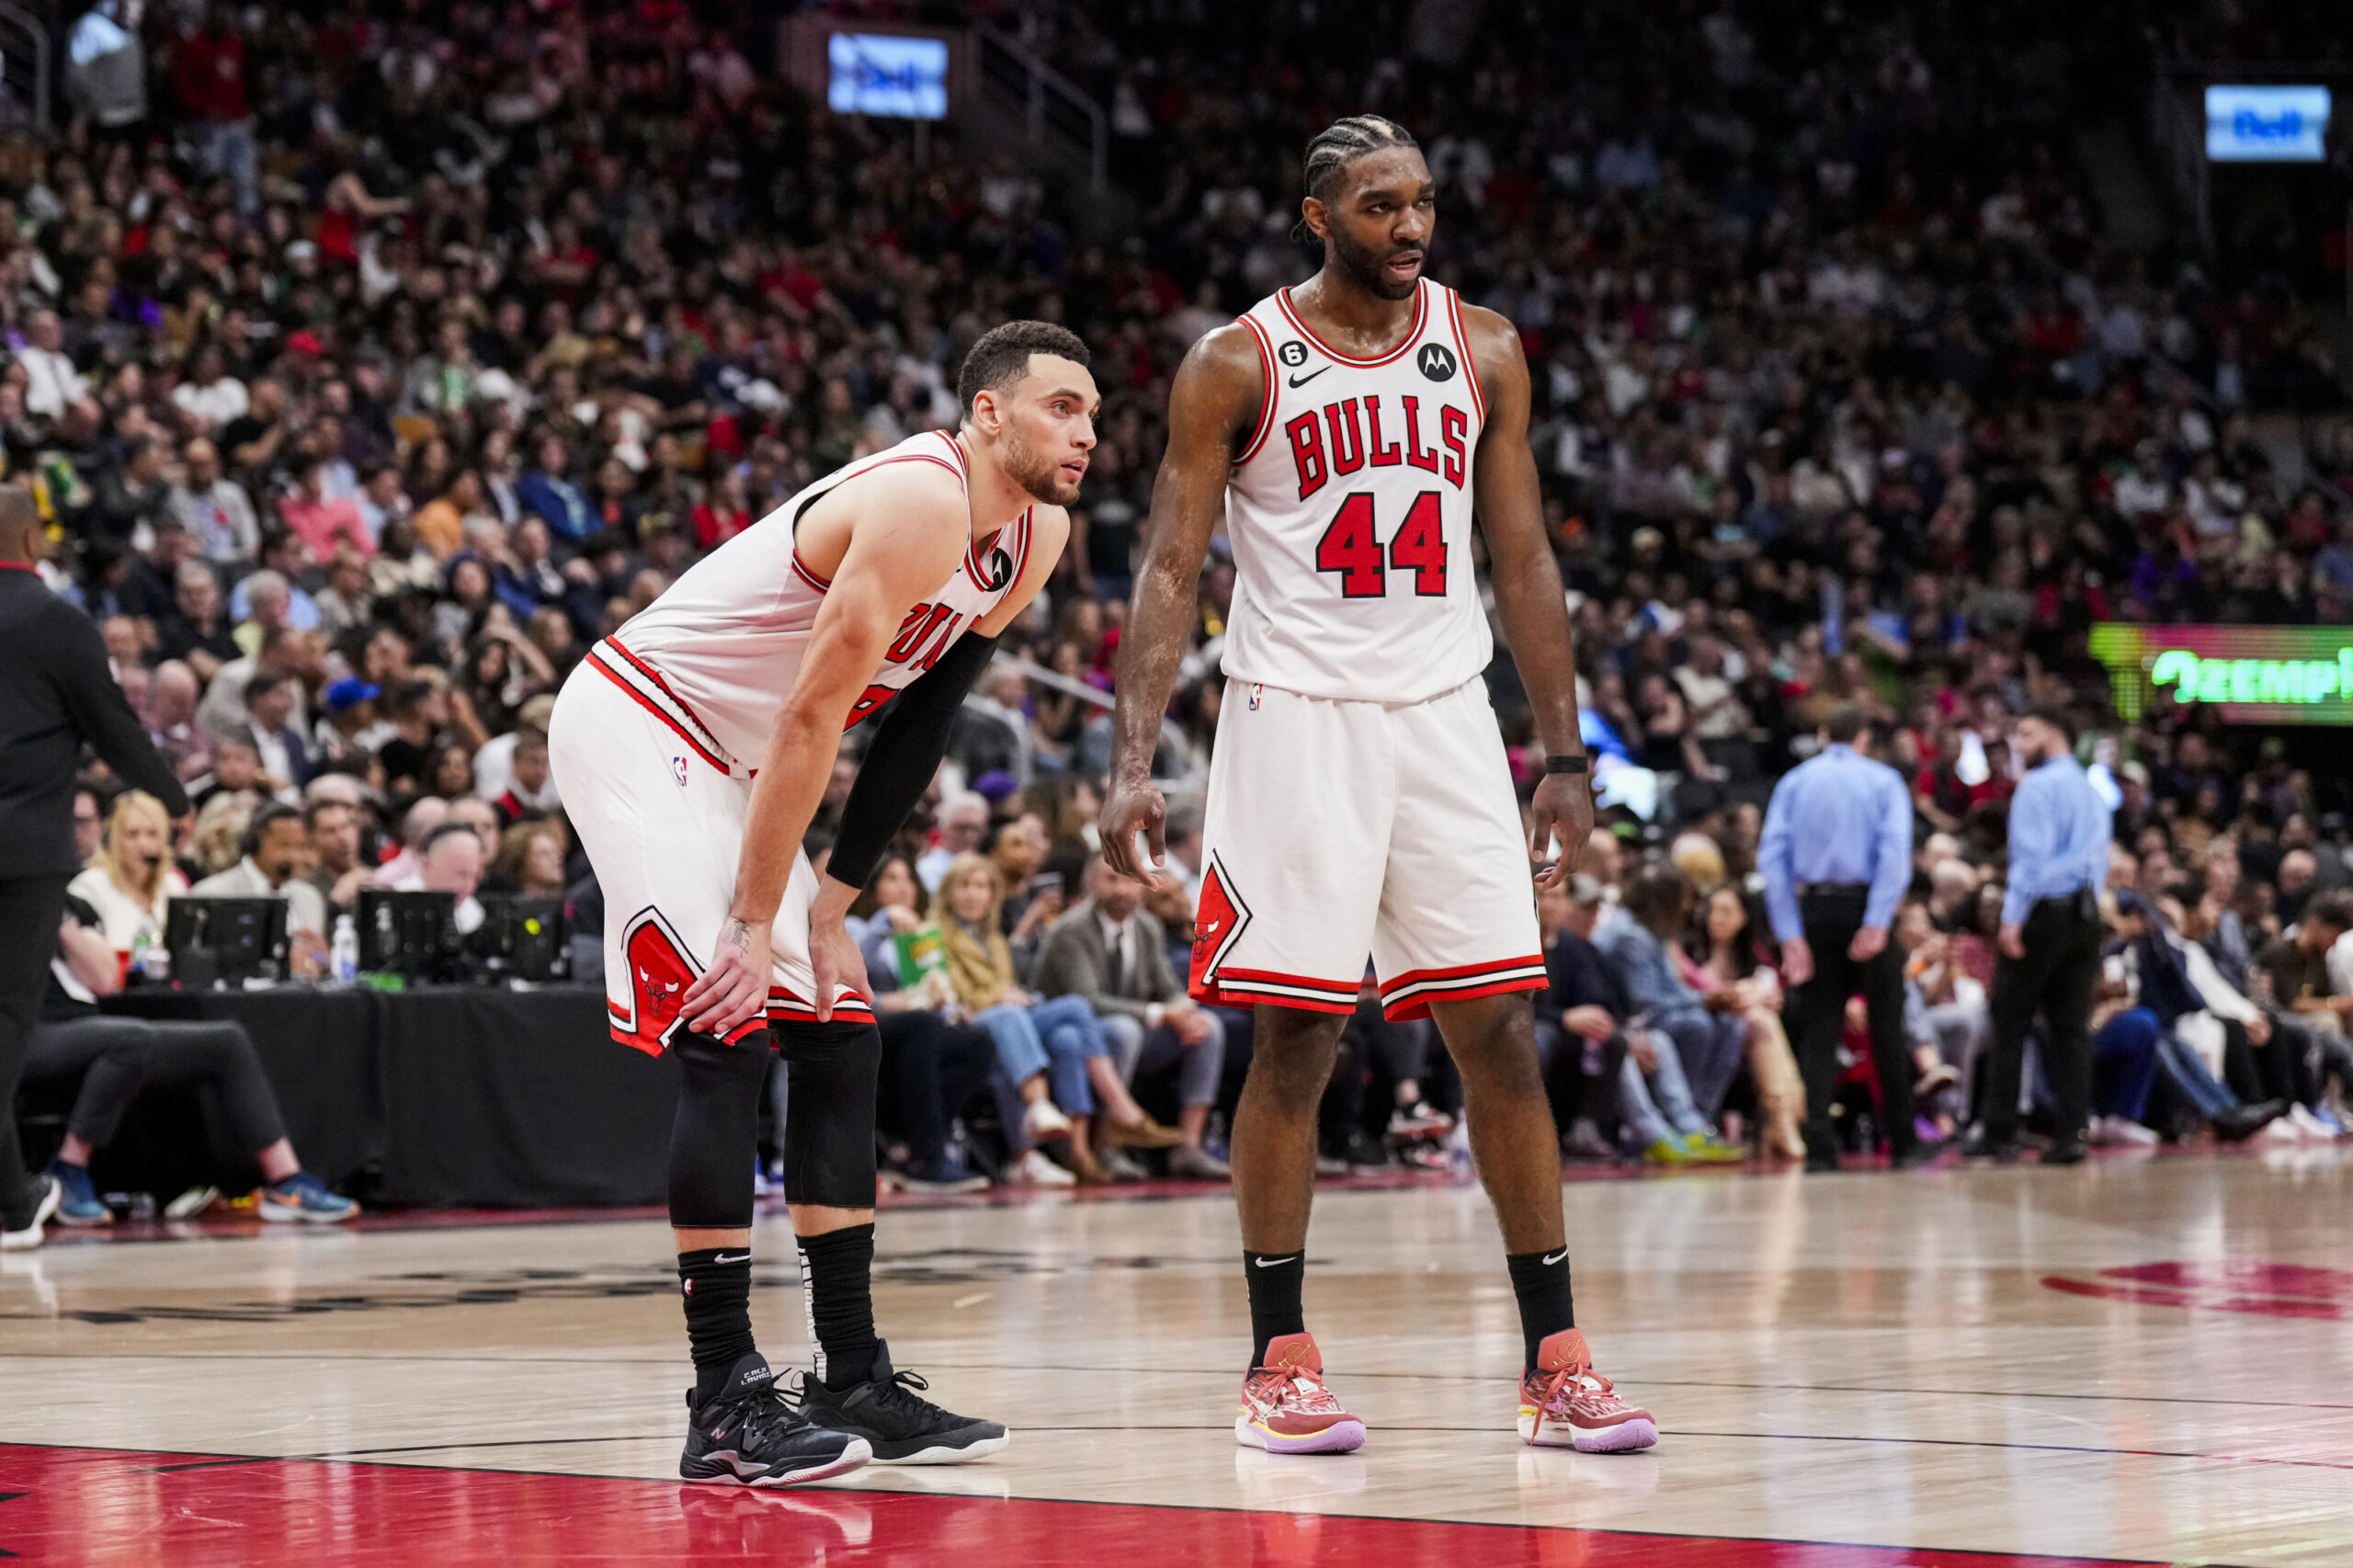 Bulls' Zach LaVine in 'Preliminary Discussions' for Trail Blazers